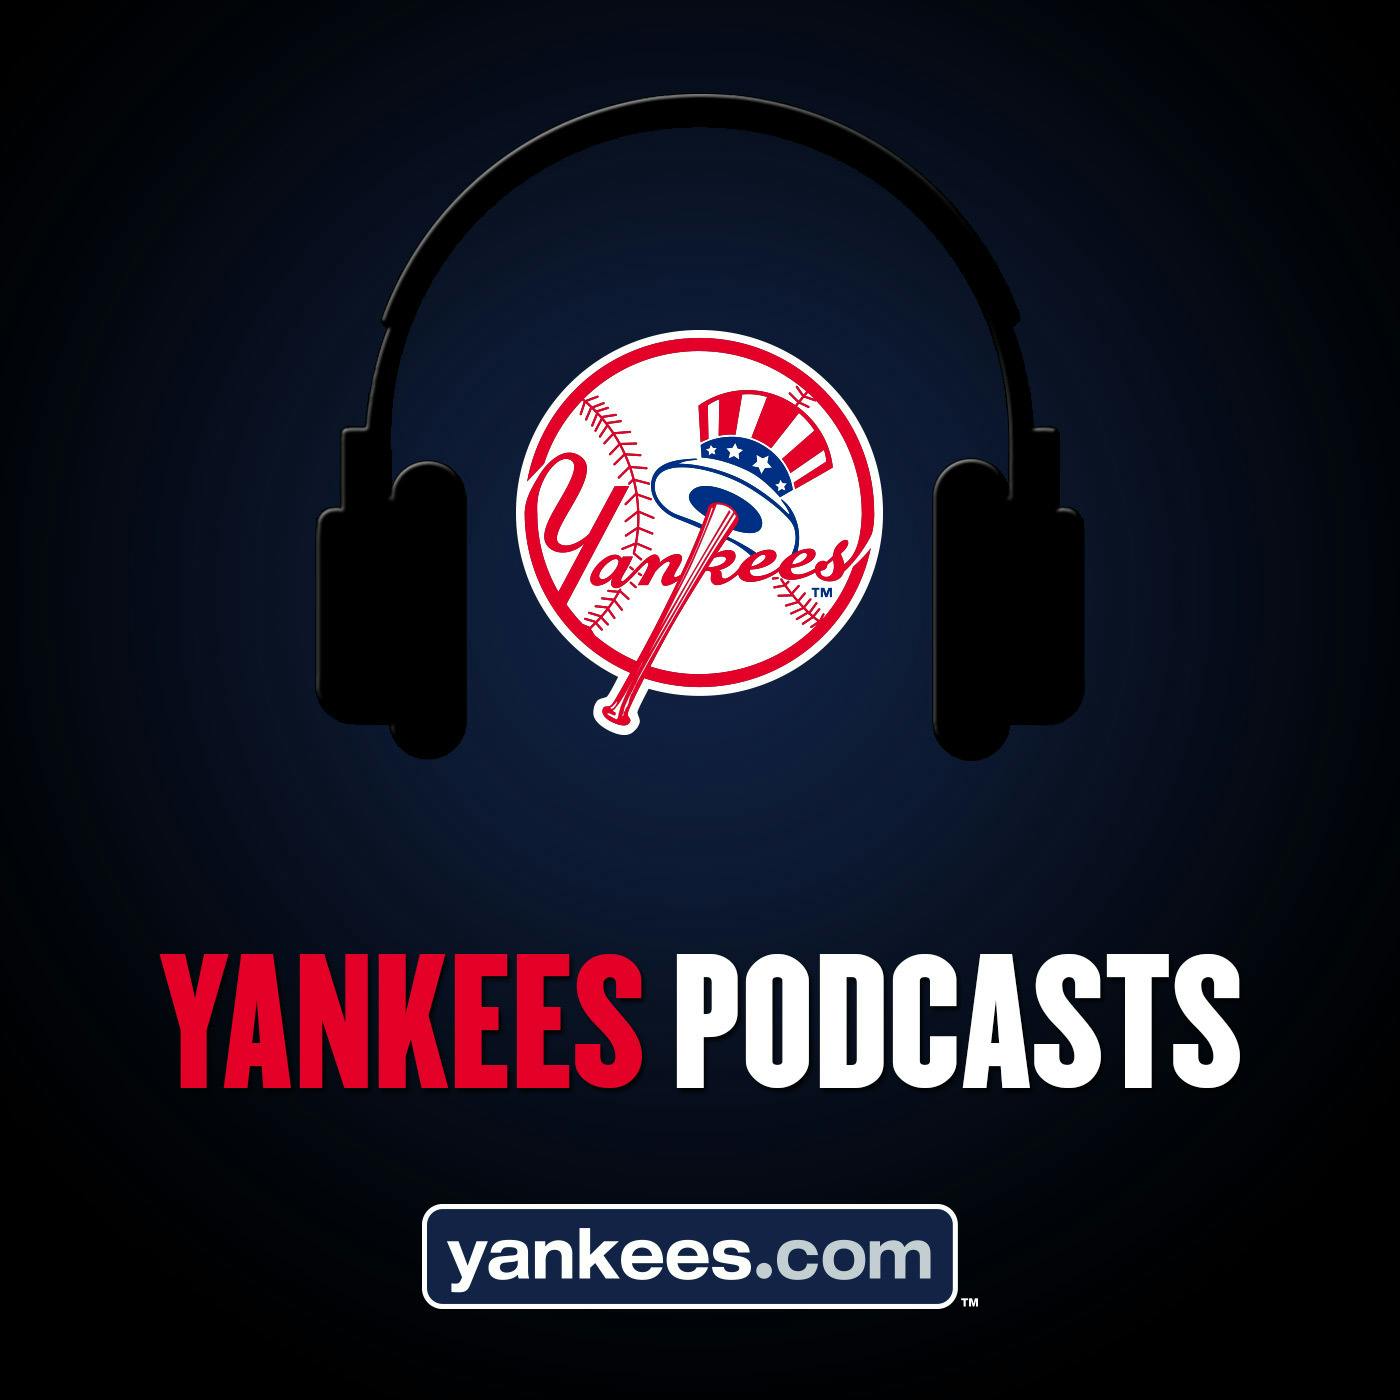 Yankees Magazine Podcast: Episode 17